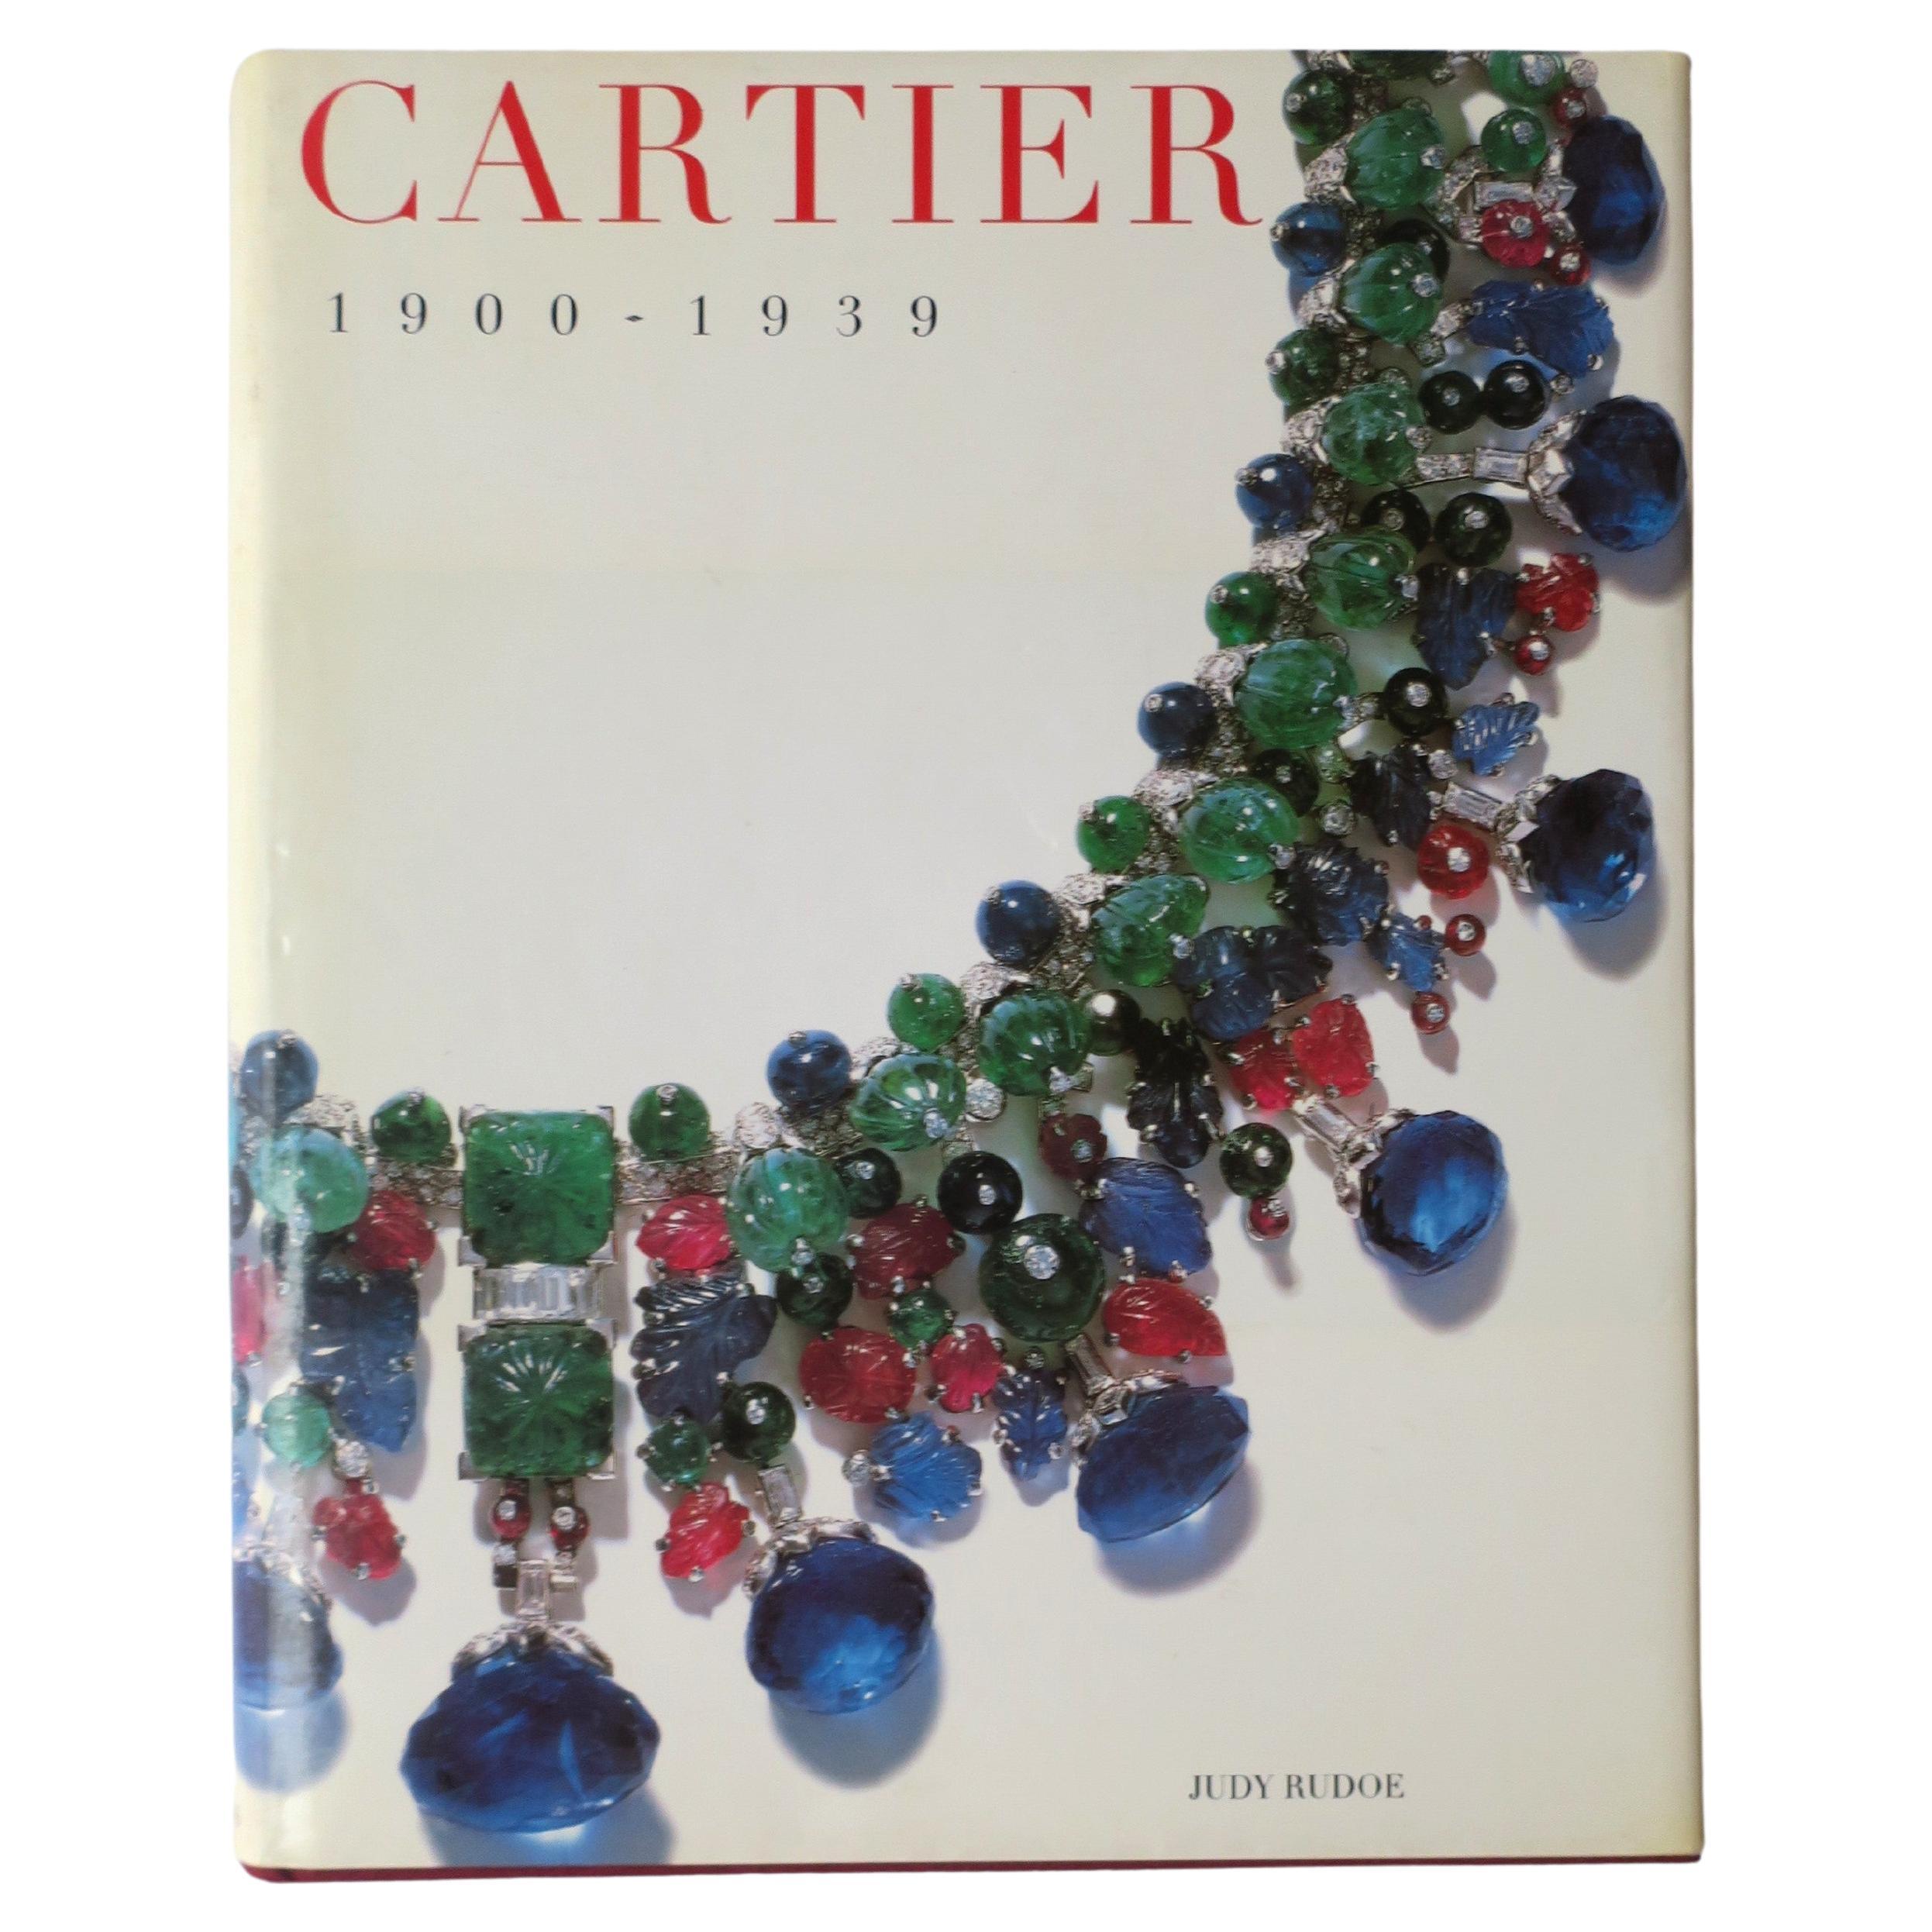 Livre de table d'exposition haute joaillerie Cartier, 1997